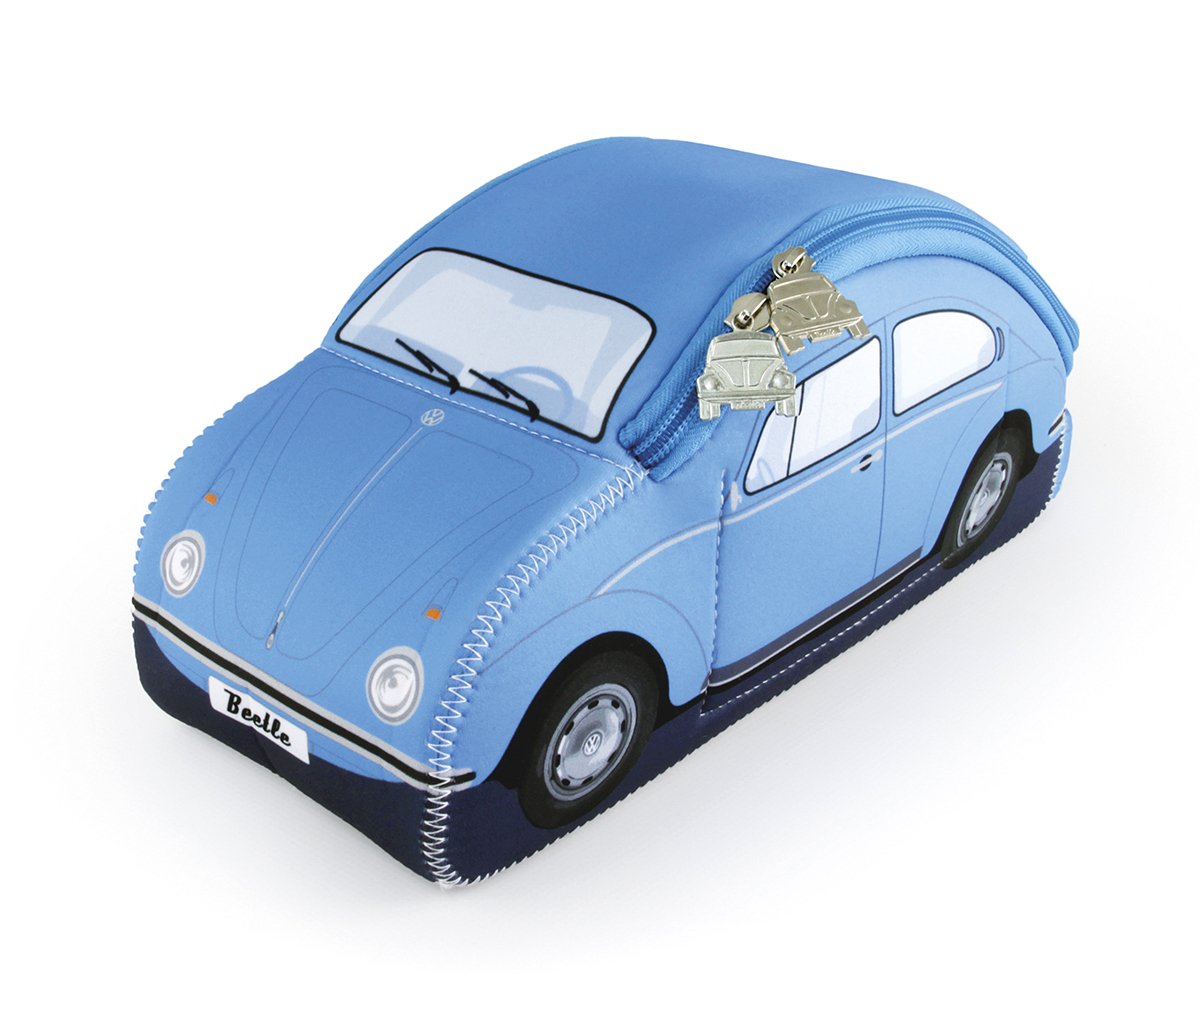 Bolsa universal de neopreno 3D VW Escarabaja